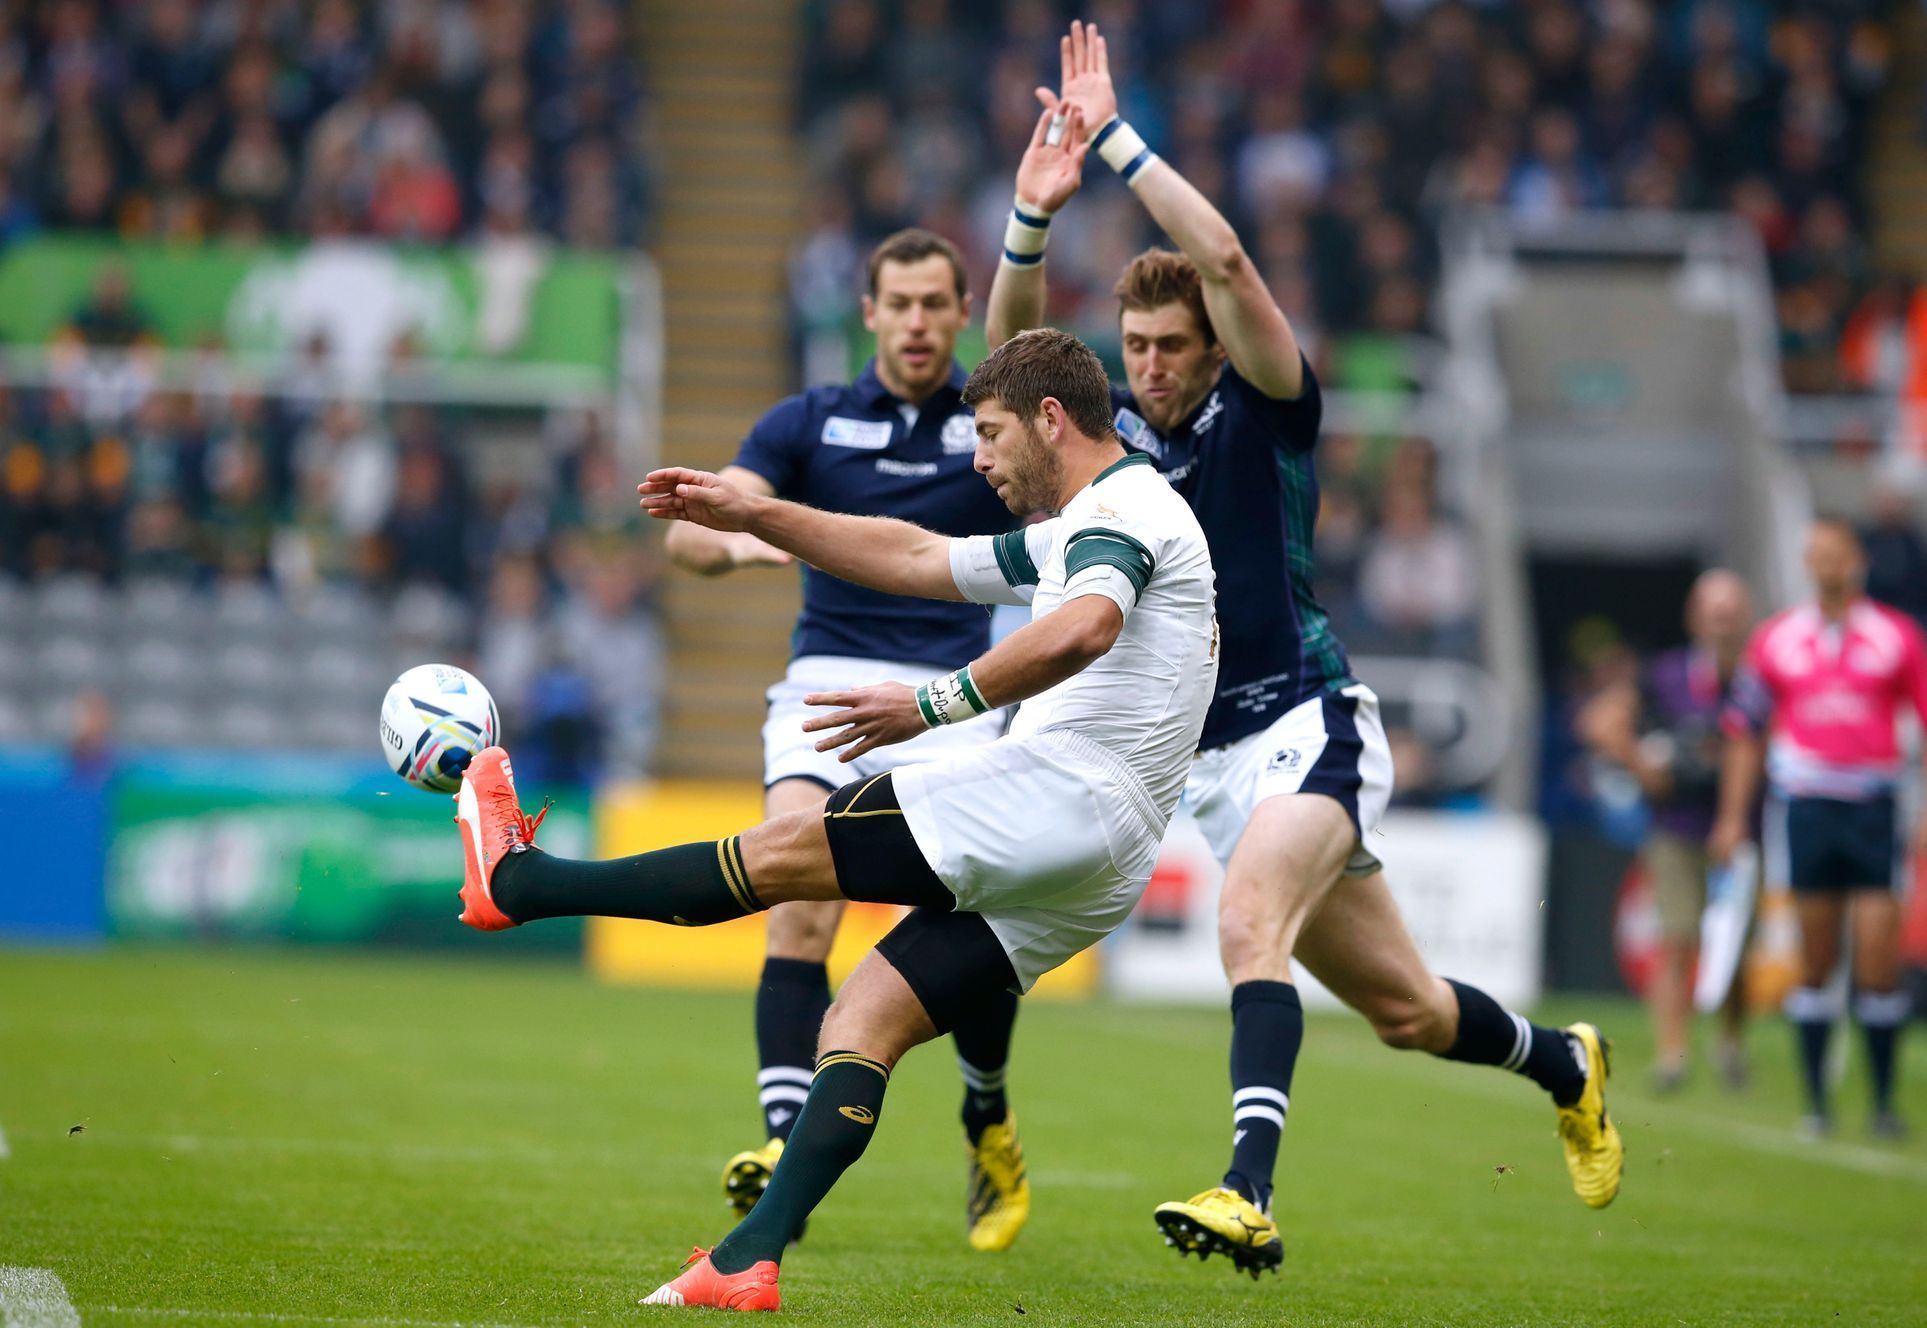 Jihoafrická republika proti Skotsku na MS v rugby 2015 (Willie le Roux odkopává před Richiim Vernonem)